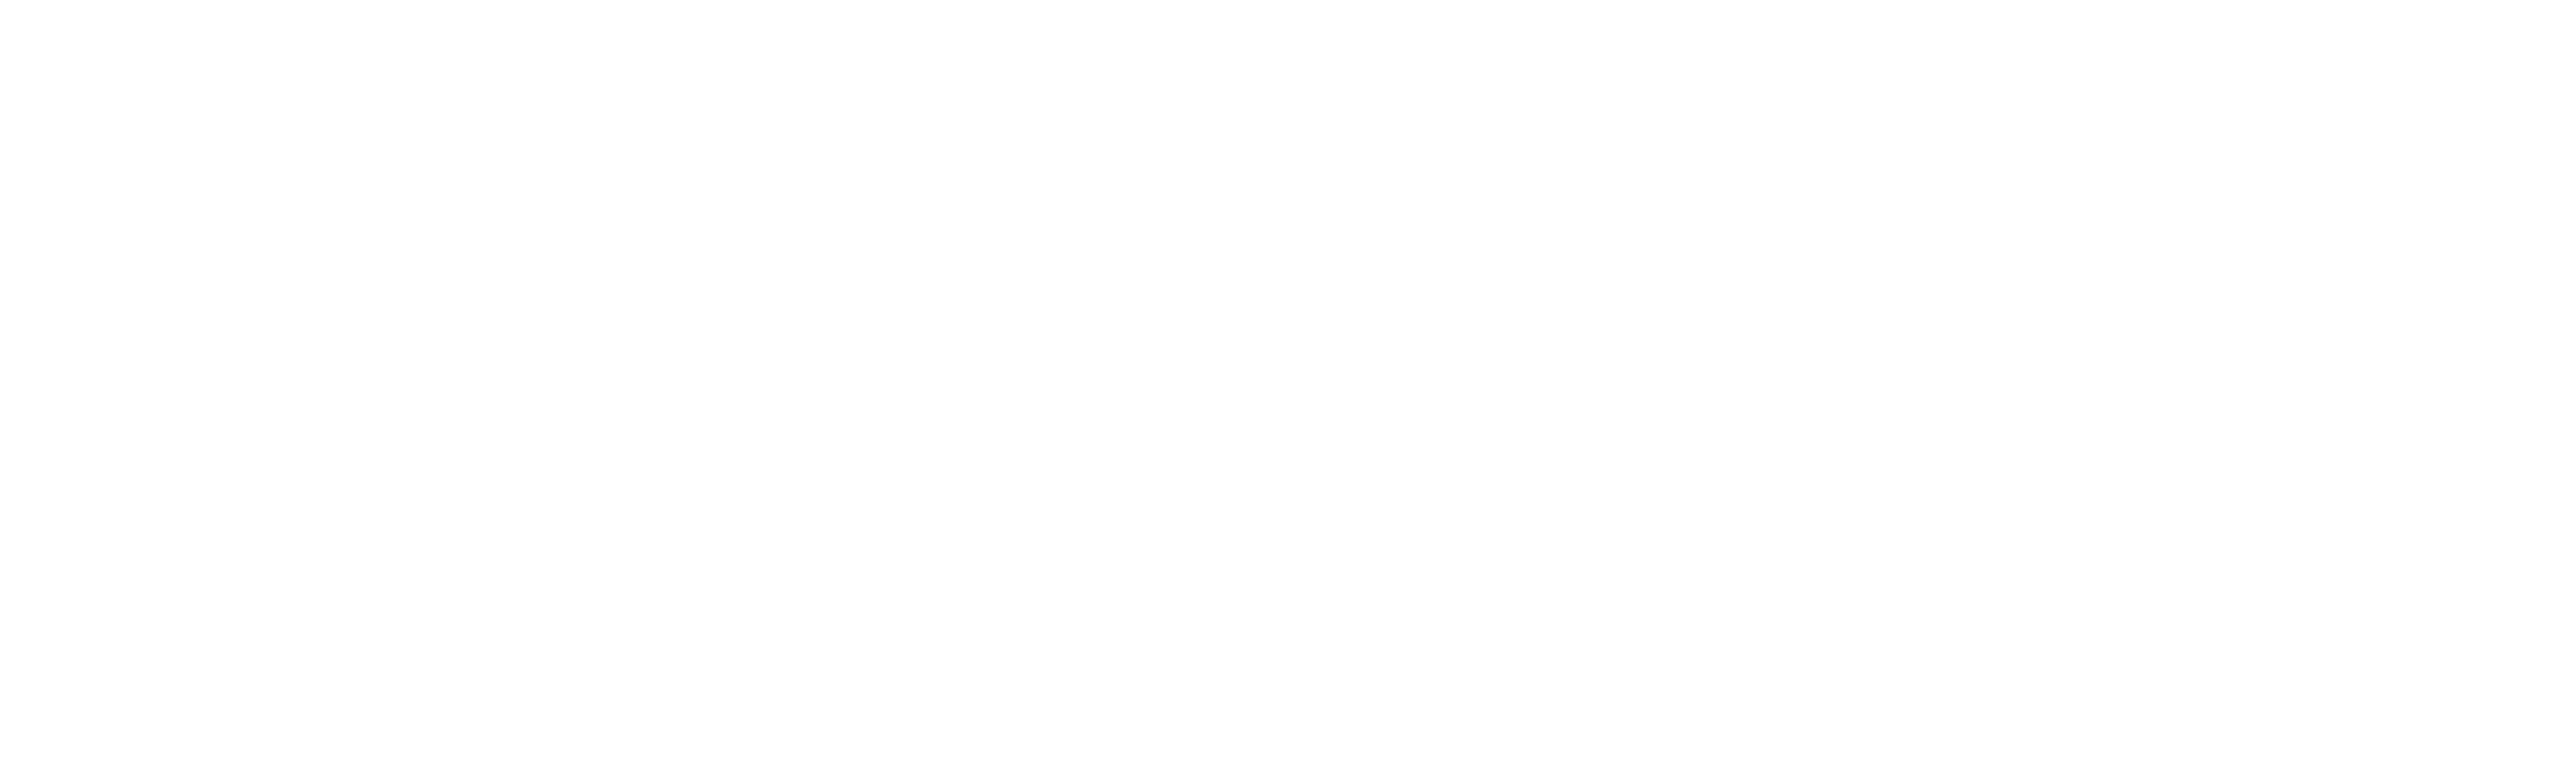 Psgn1 logo